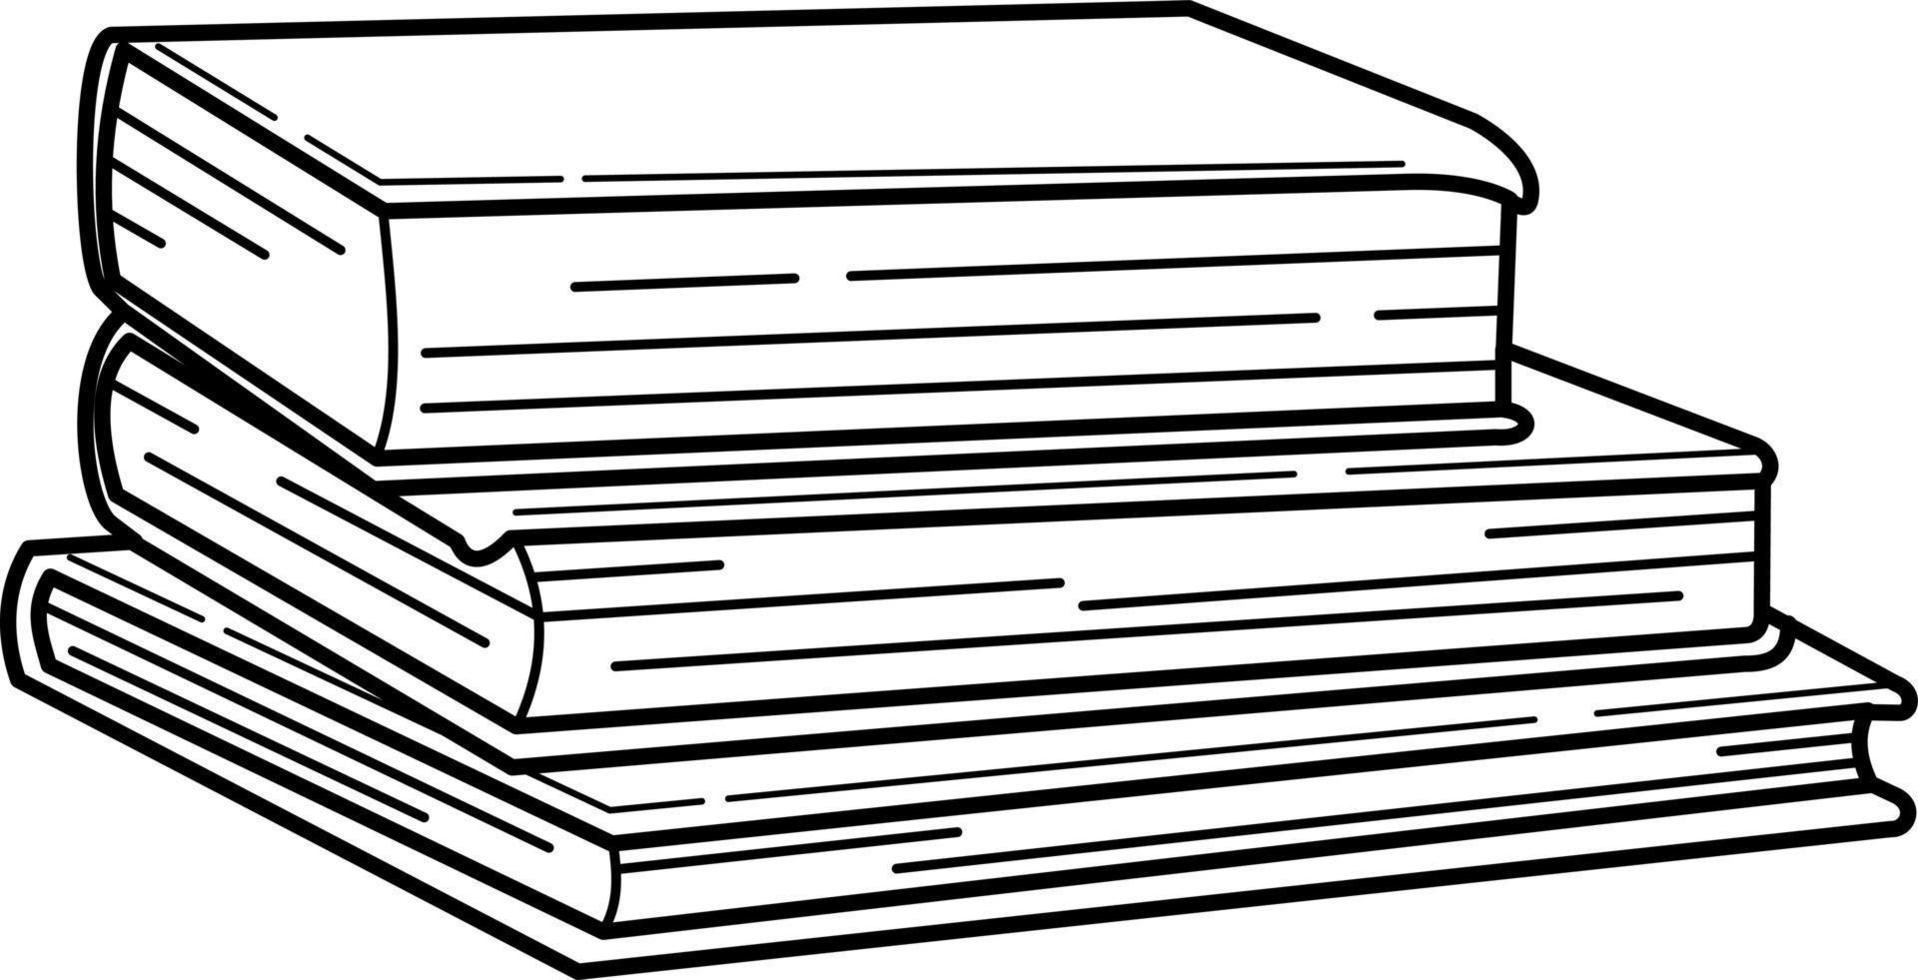 Stapel Bücher Doodle-Vektor-Illustration vektor